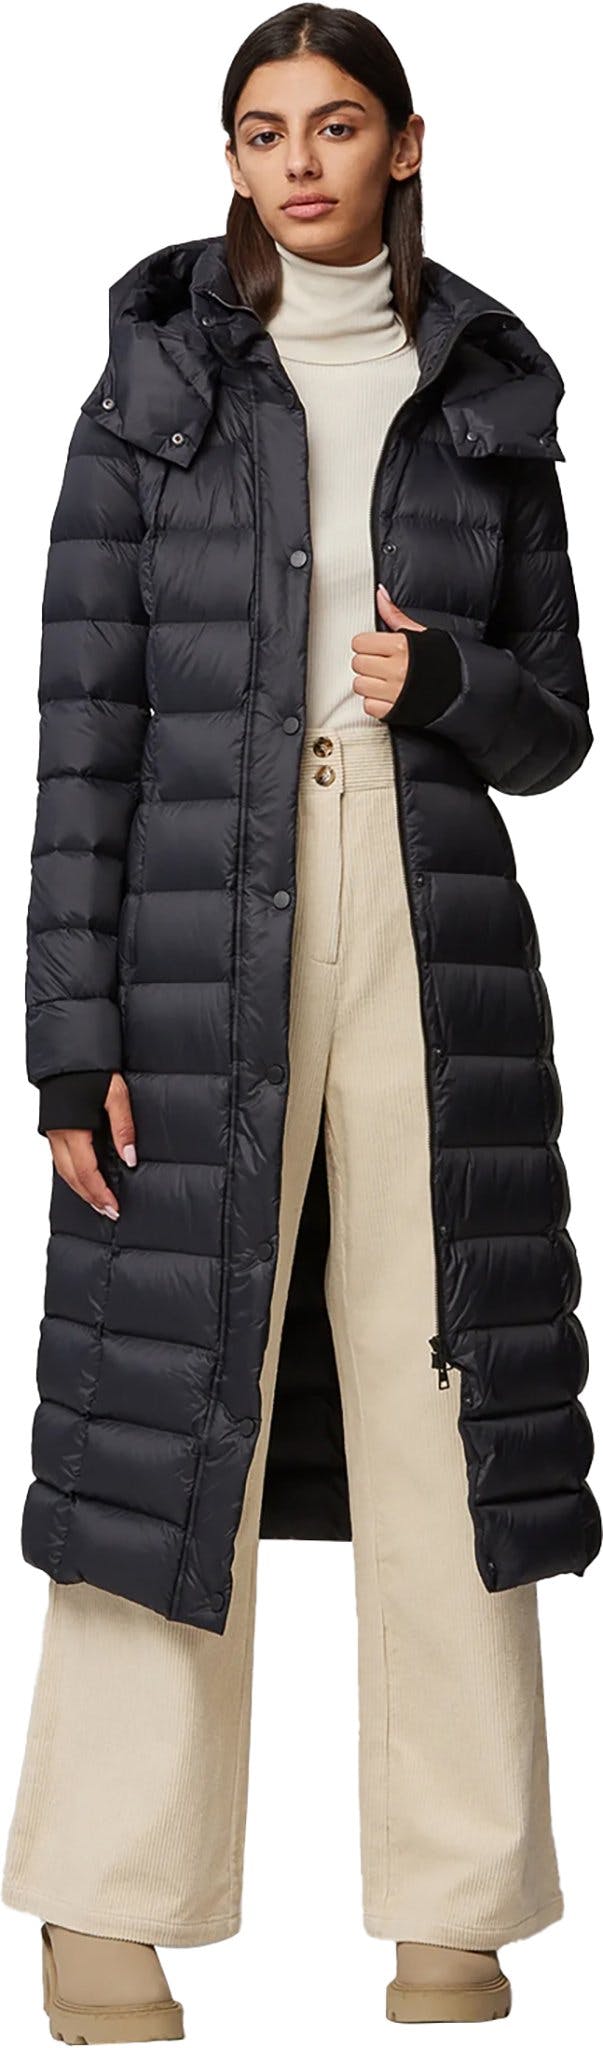 Numéro de l'image de la galerie de produits 5 pour le produit Manteau aux mollets en duvet léger durable avec capuchon Ivana-N - Femme